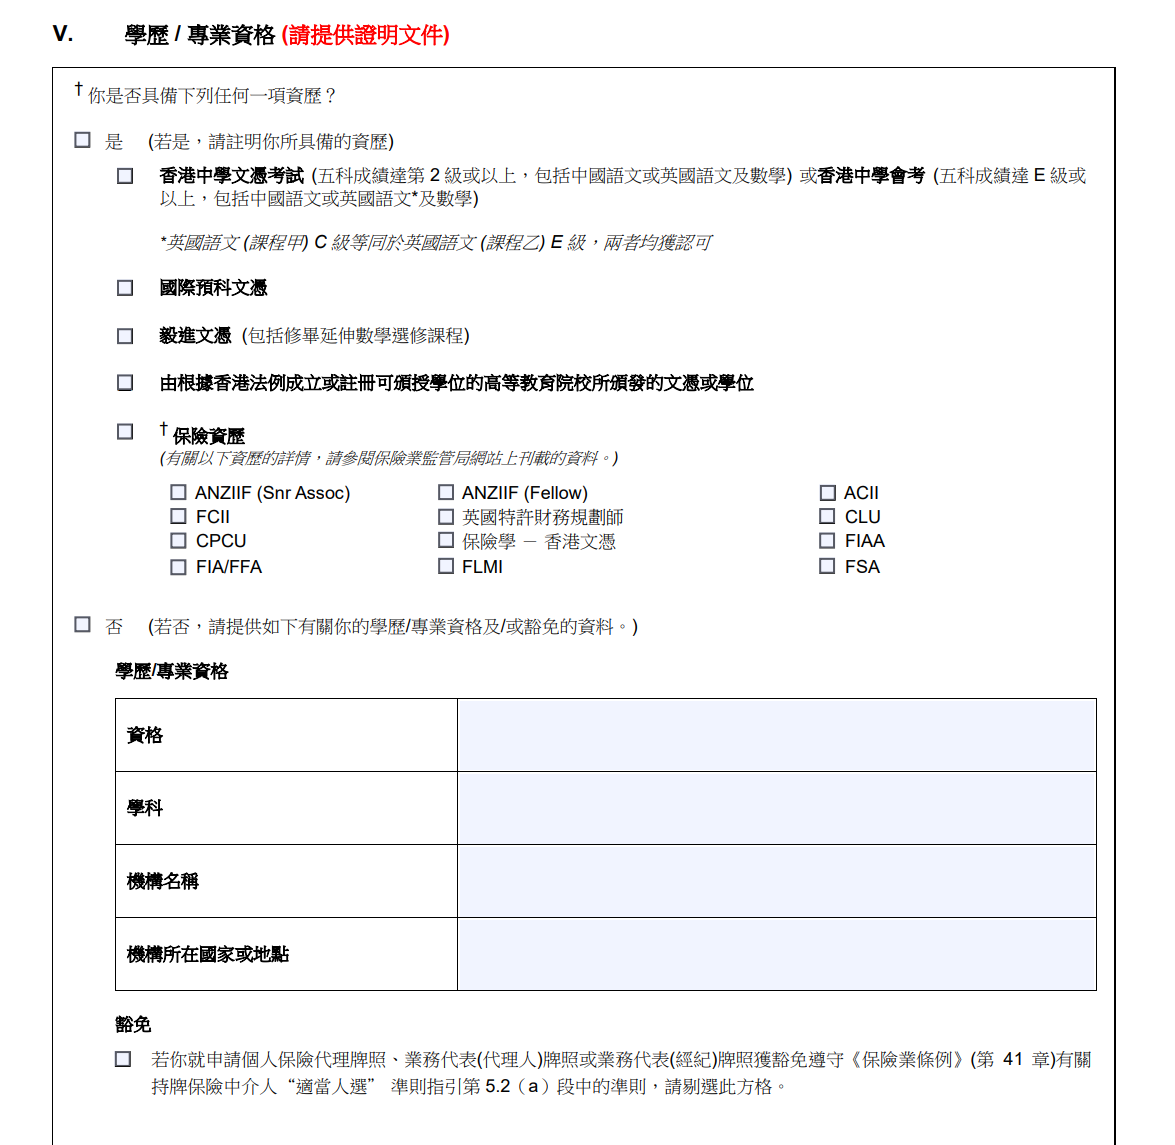 香港保险牌照 考试_香港保险考试费用_香港保险和国内保险利与弊